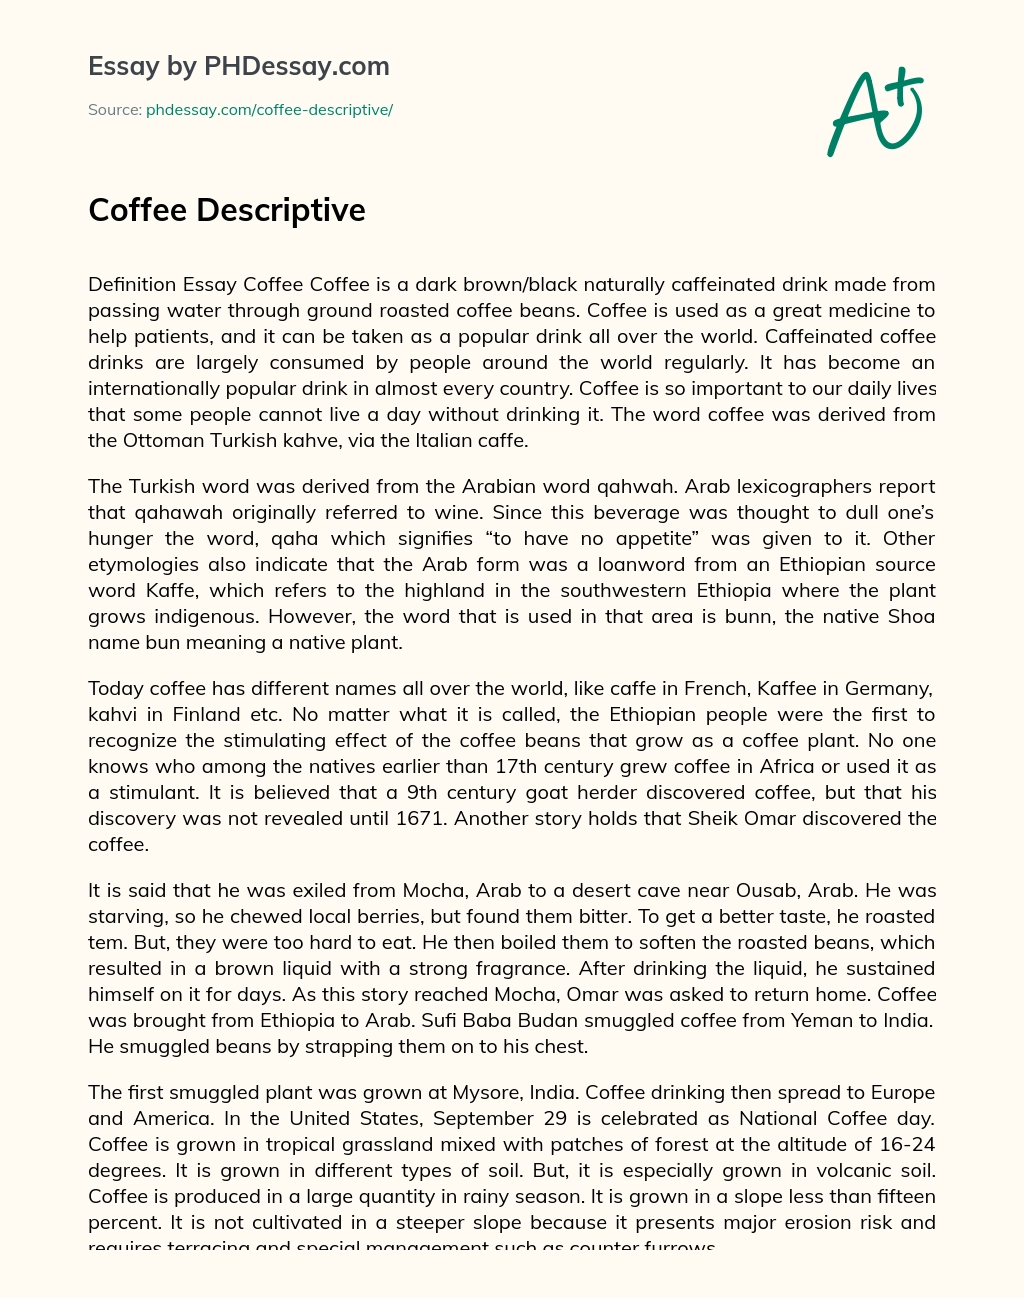 Coffee Descriptive essay